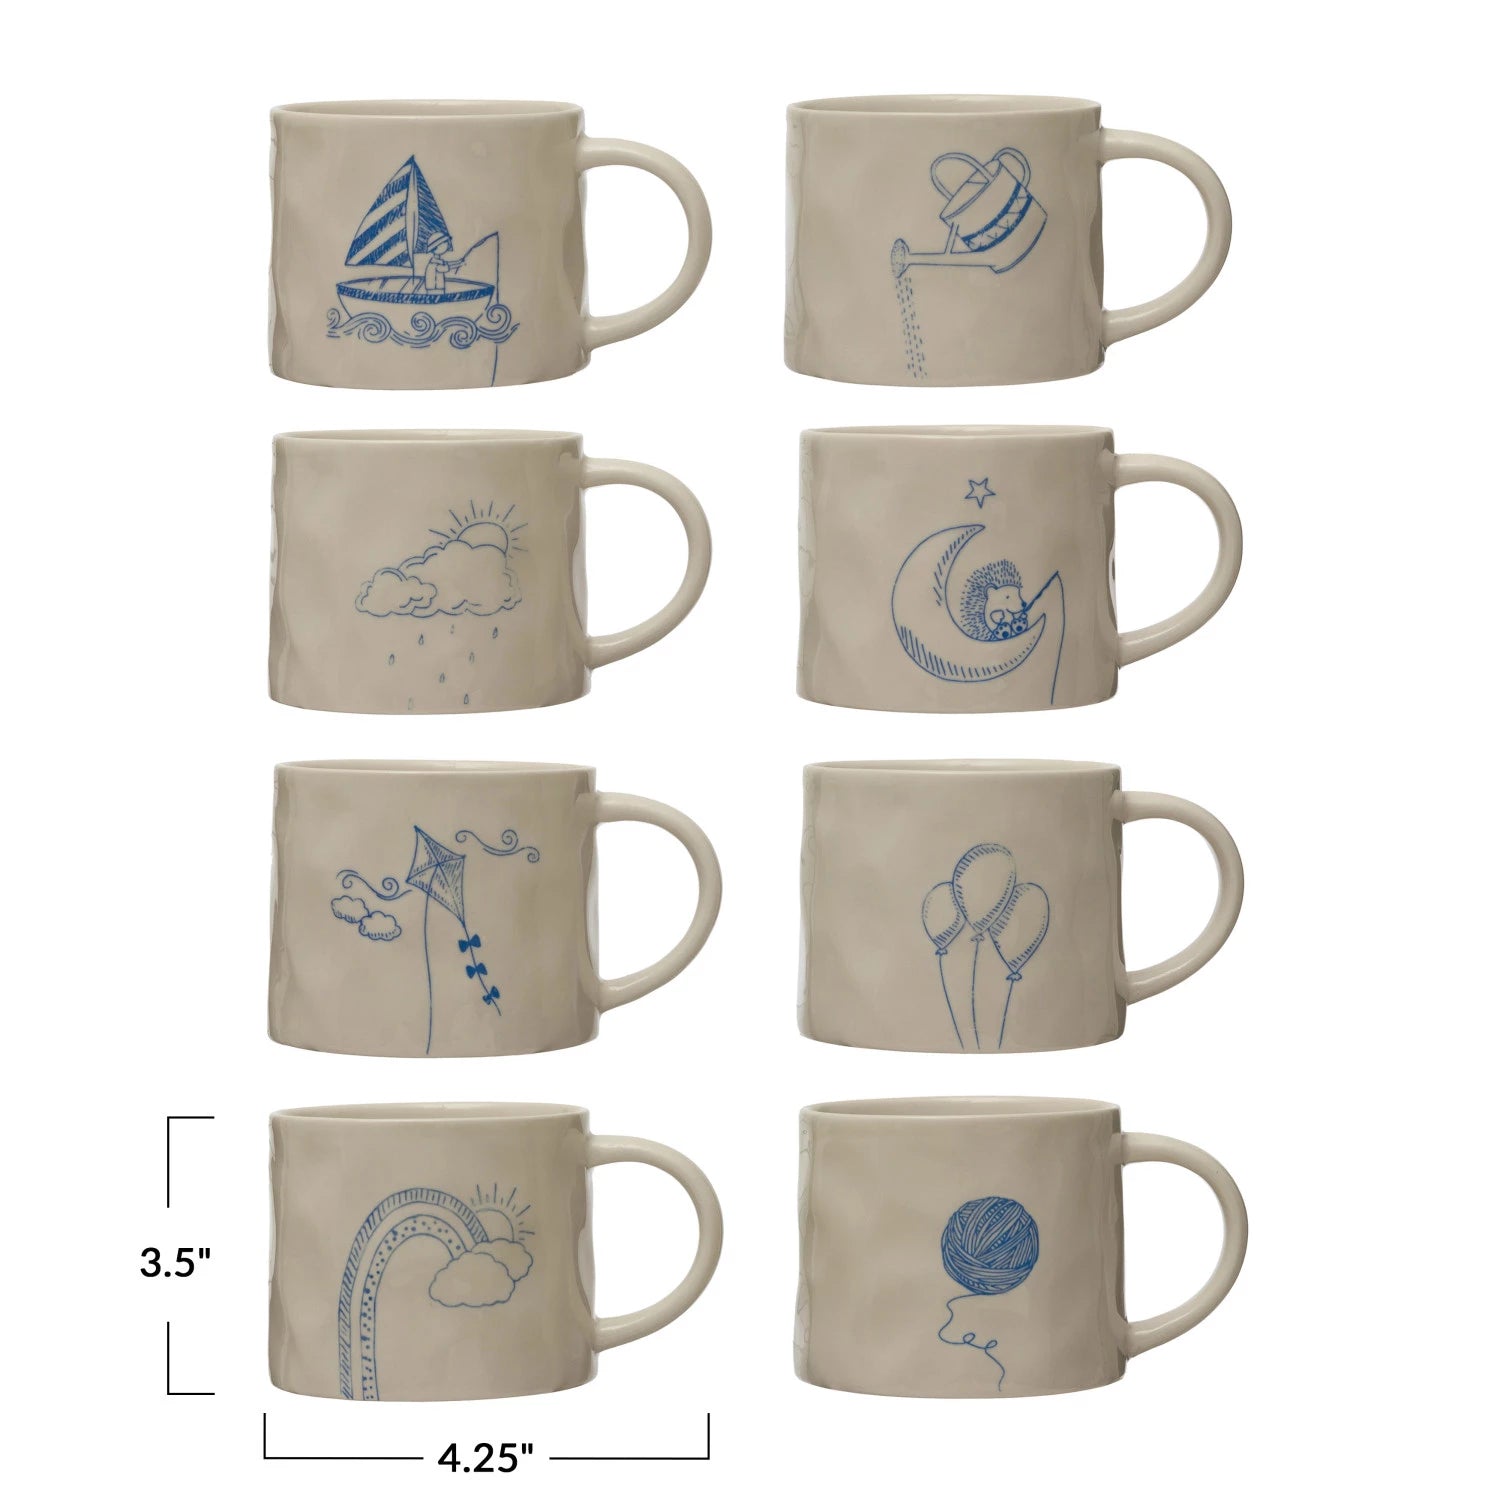 Mug  - 16 oz. Stoneware Mug w/ Wax Relief Image & Secret Image on Bottom, 8 Styles